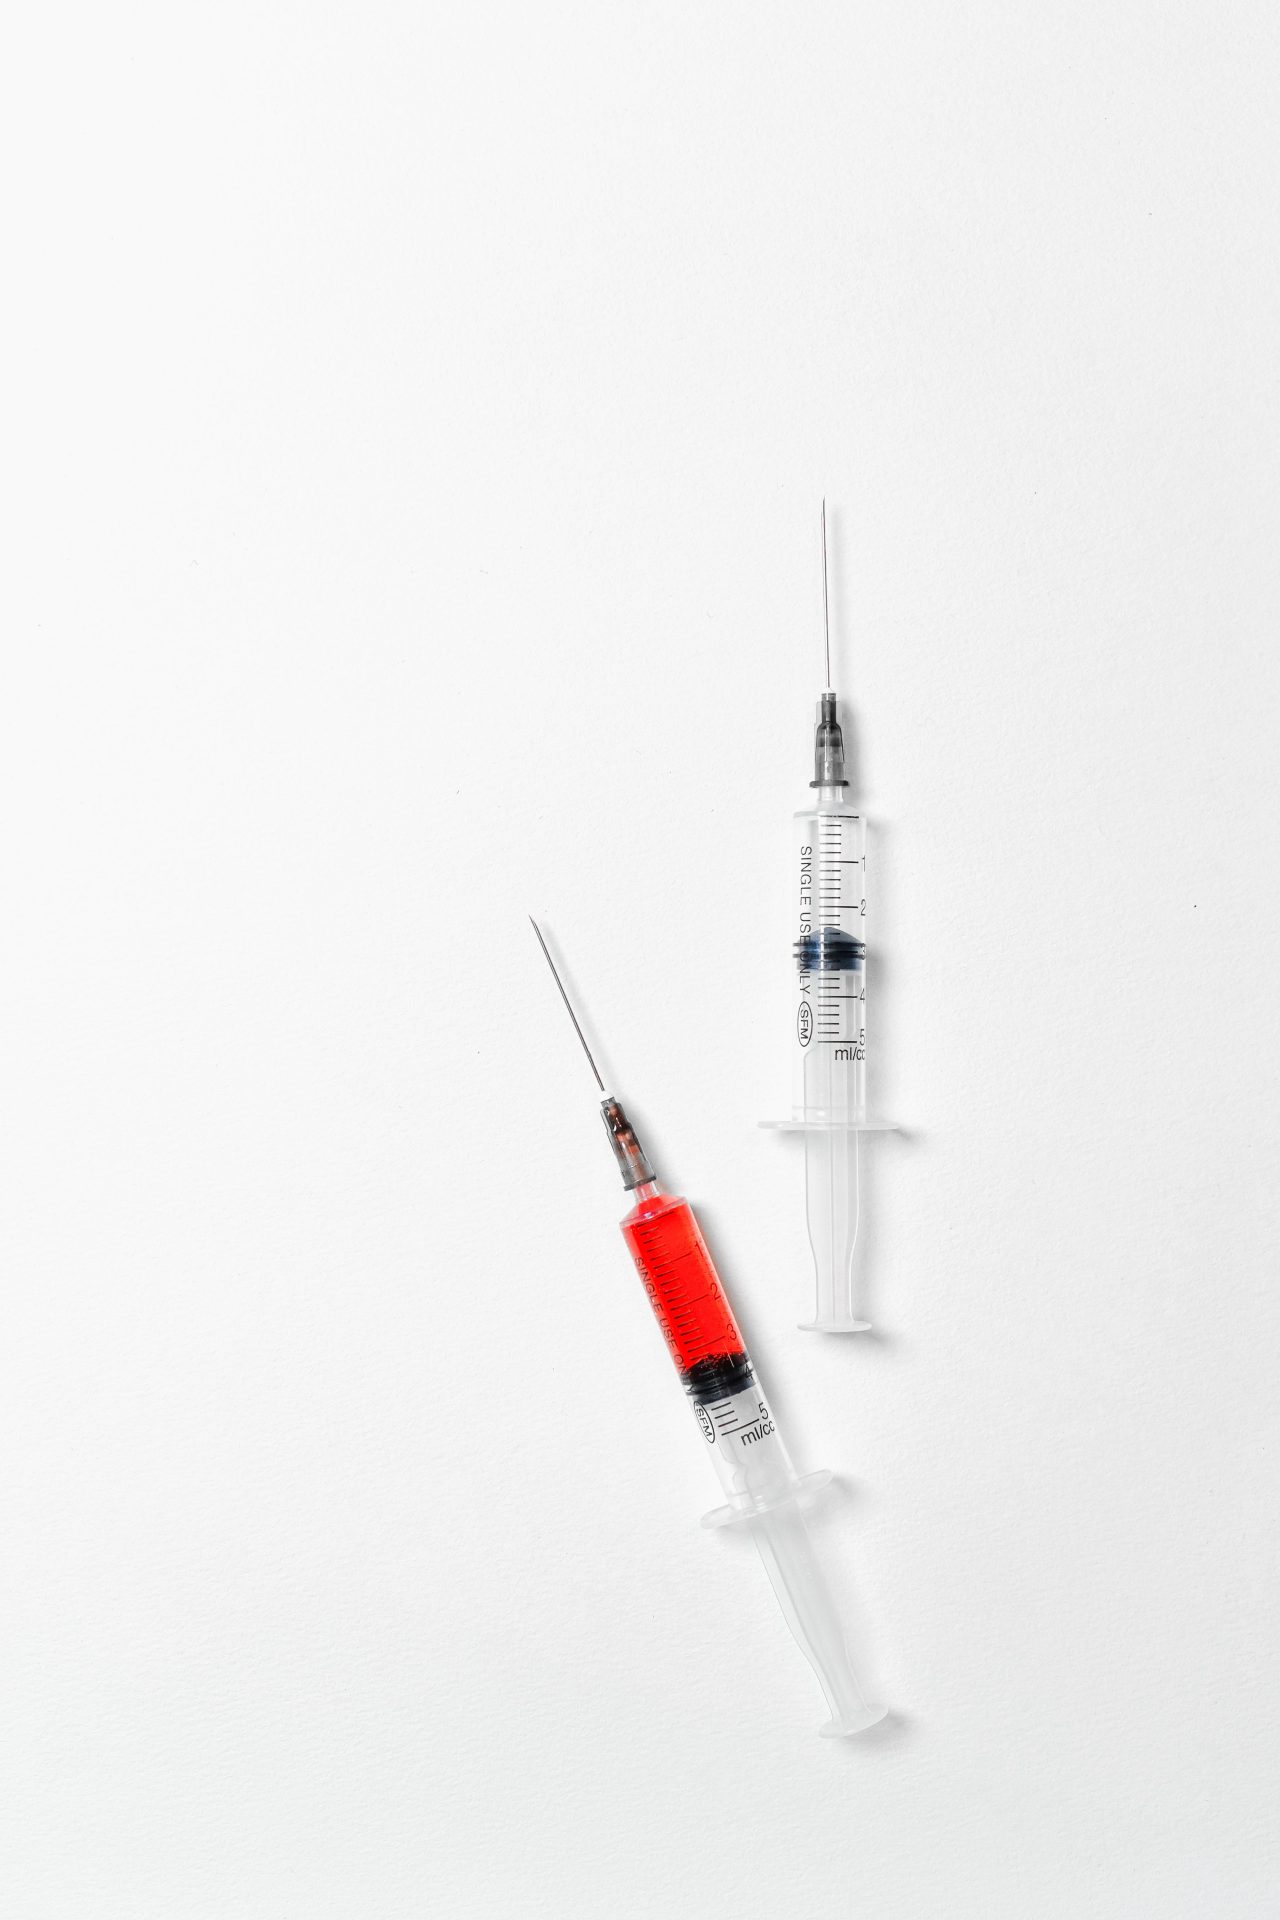 AERLI accompagnement à l'injection éductation réduction des risques